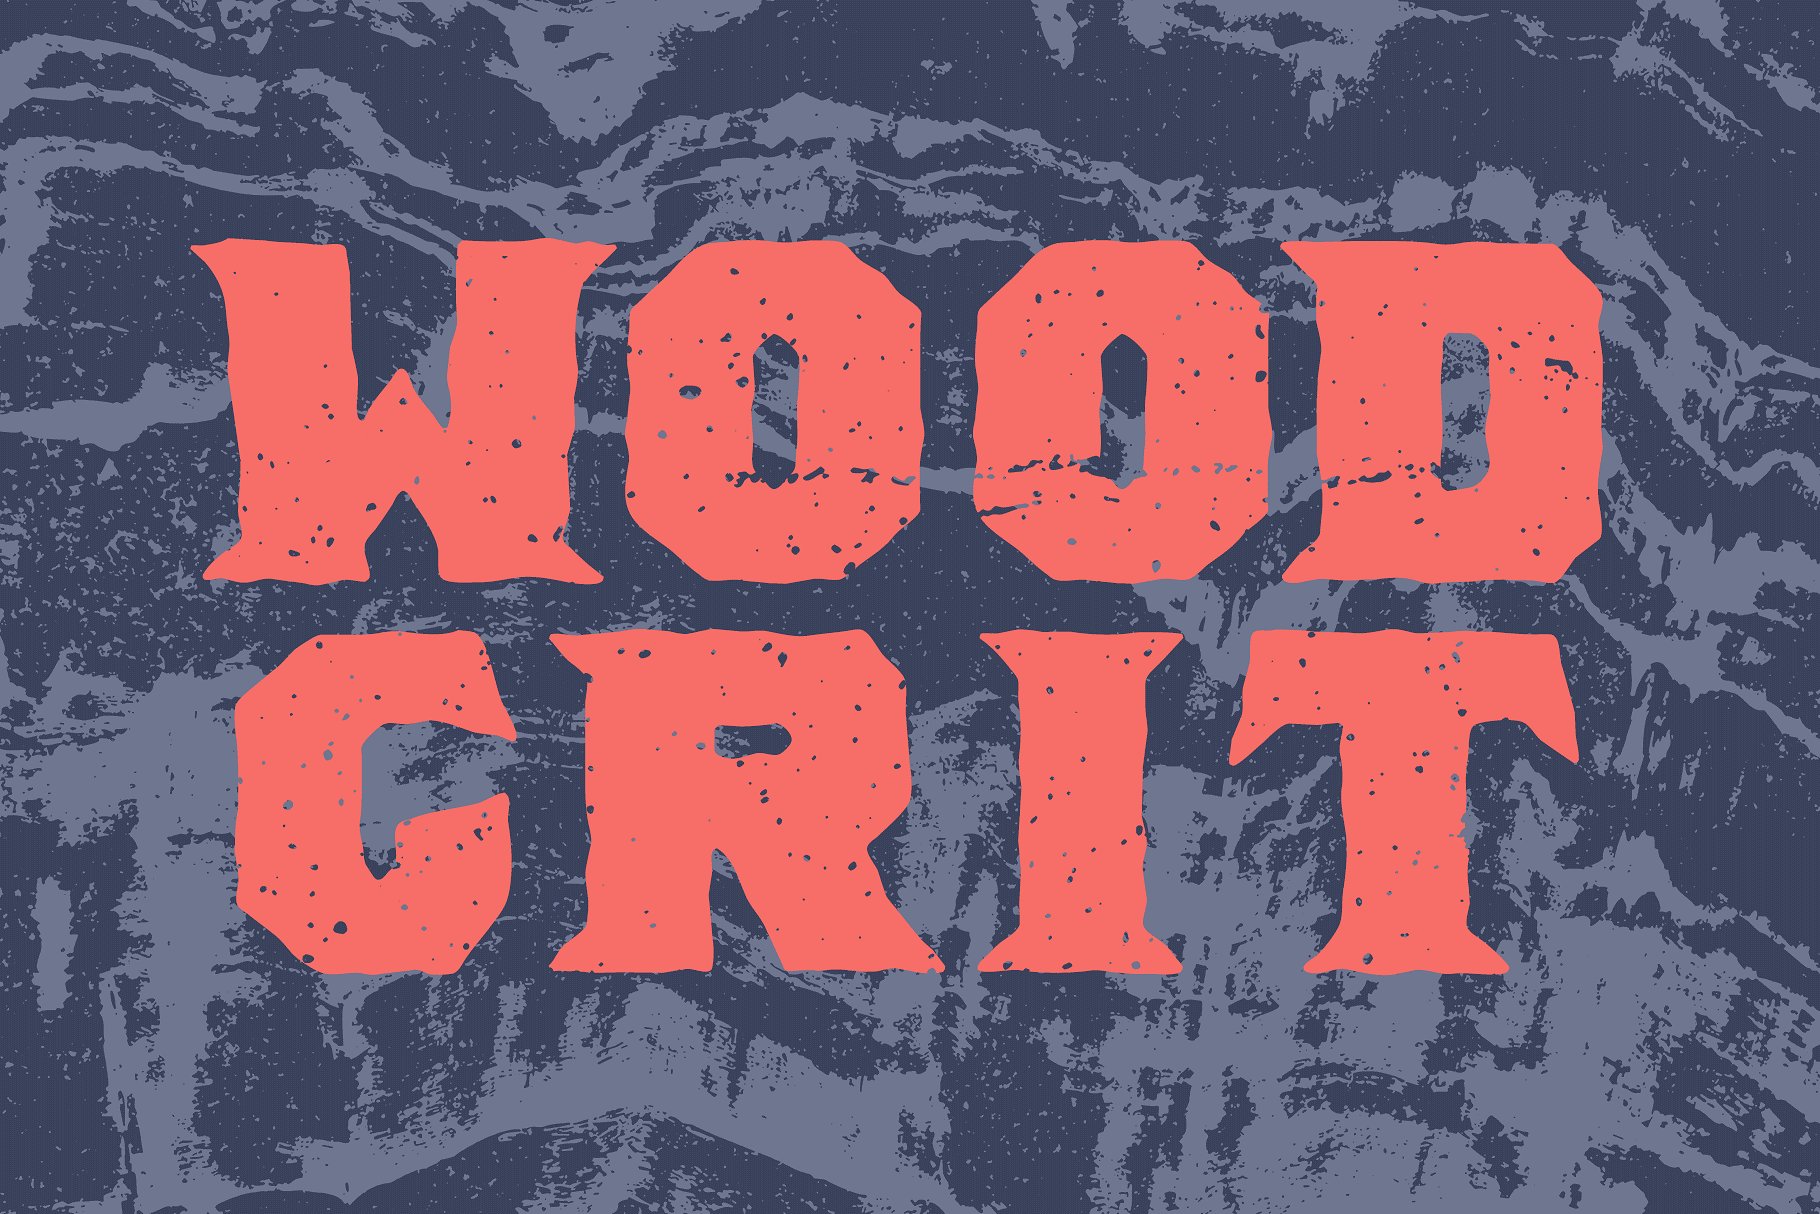 原始粗糙天然木材纹理合集 Gritty Wood Textures插图